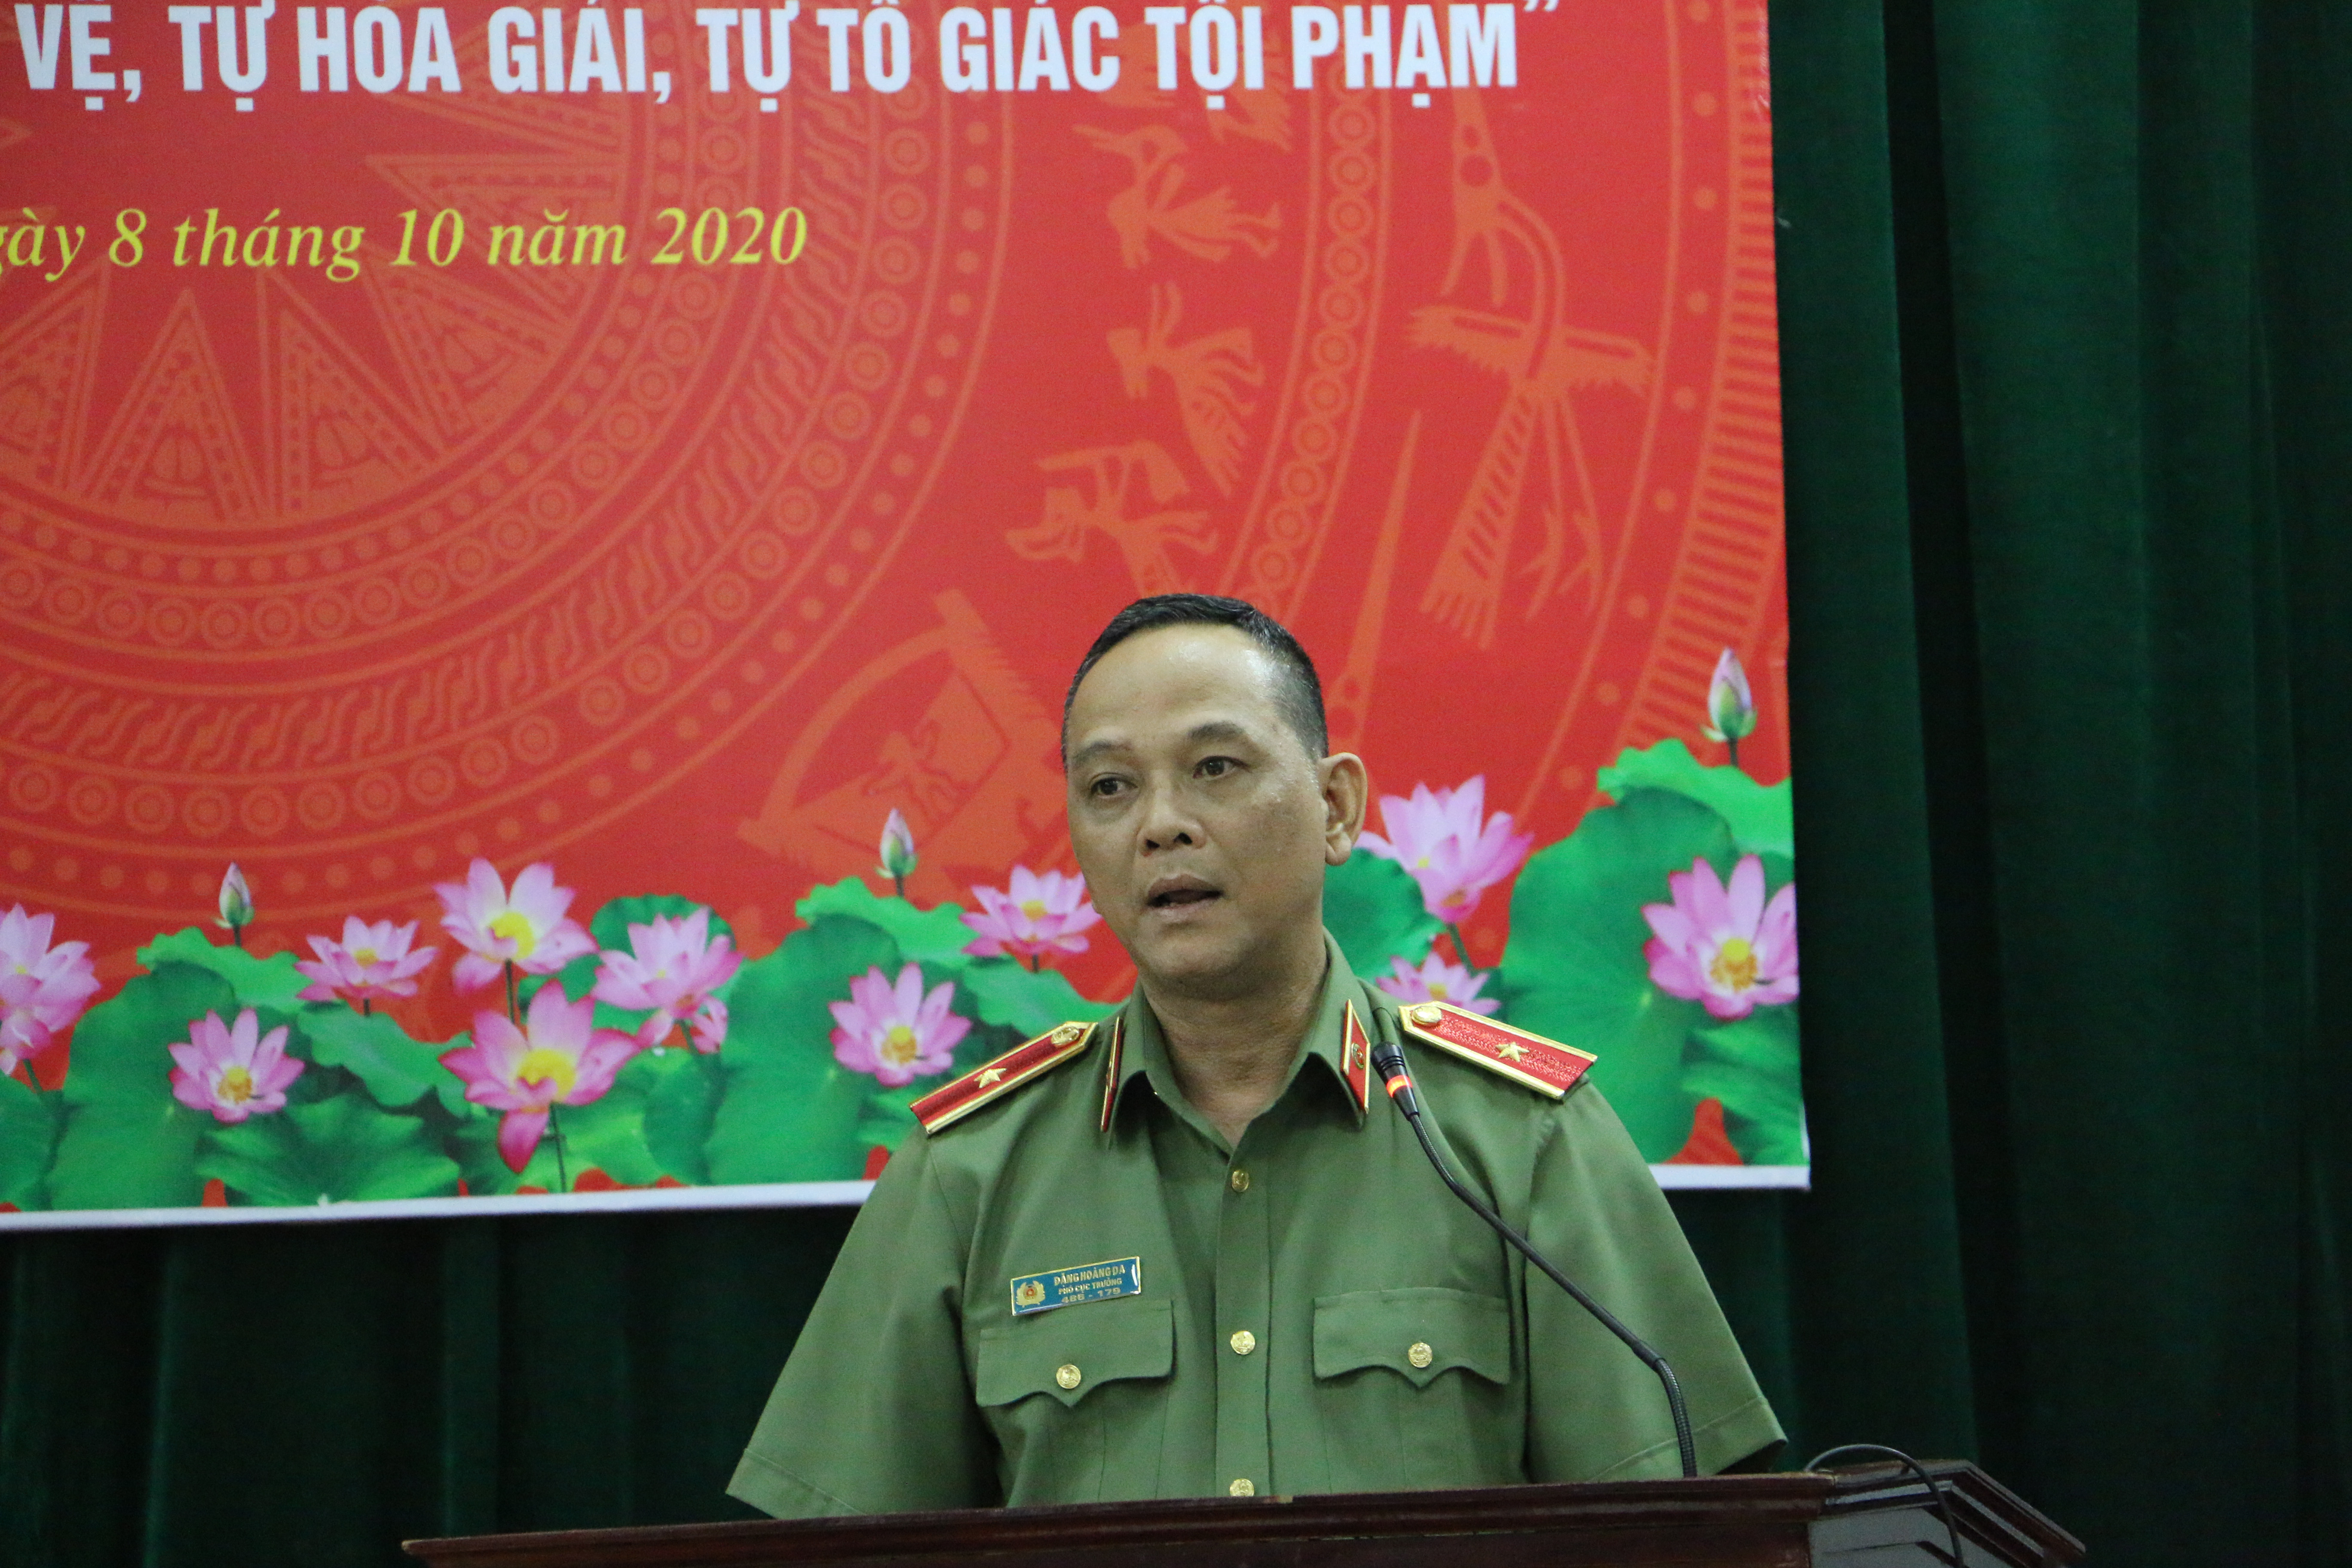 Thiếu tướng Đặng Hoàng Đa phát biểu tại hội nghị. Ảnh: An Quỳnh.